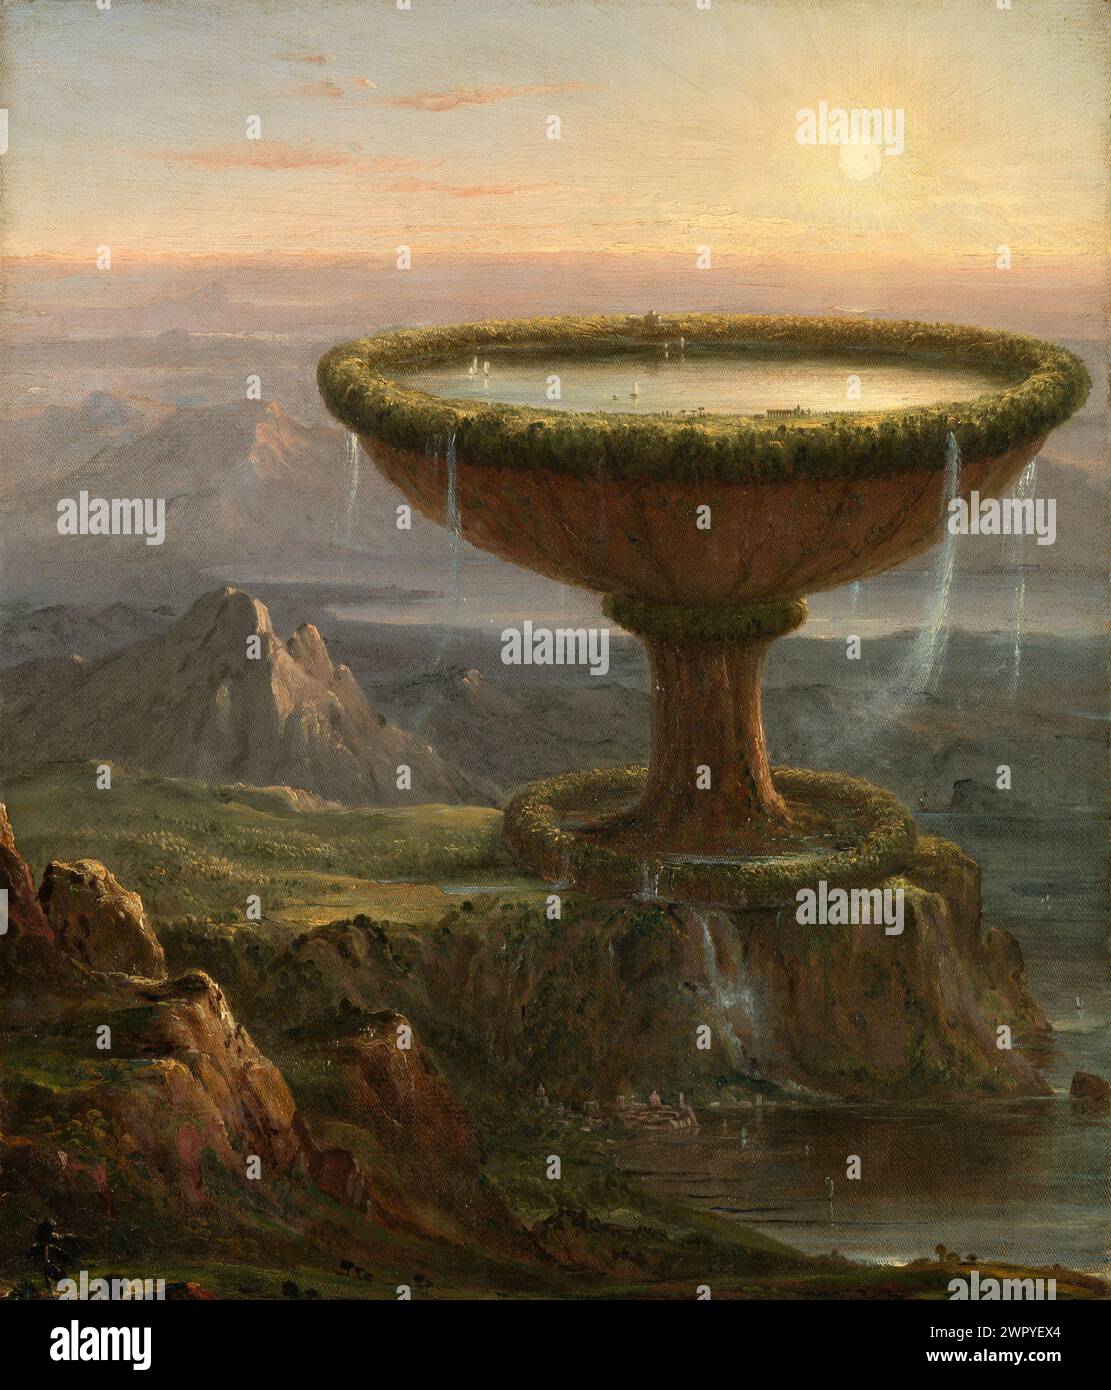 Peinture à l'huile par l'artiste américain Thomas Cole, fondateur de l'Hudson River School of Art, The Titan's Goblet CA. 1833 Banque D'Images